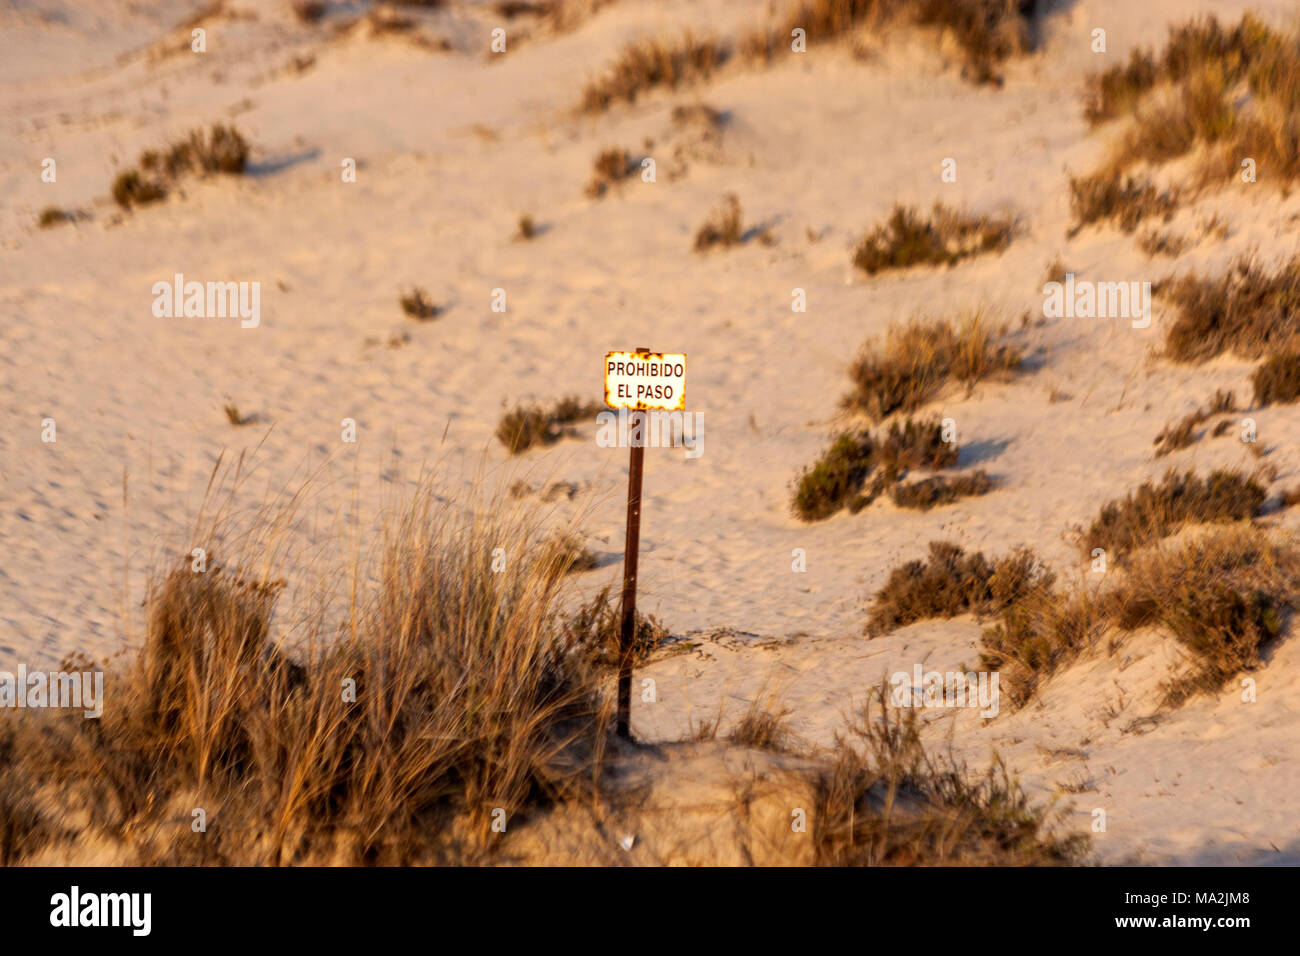 Prohibido el paso, dans des dunes dans le Parc National de Doñana, Matalascañas, Almonte, Province de Huelva, Andalousie, espagne. Banque D'Images